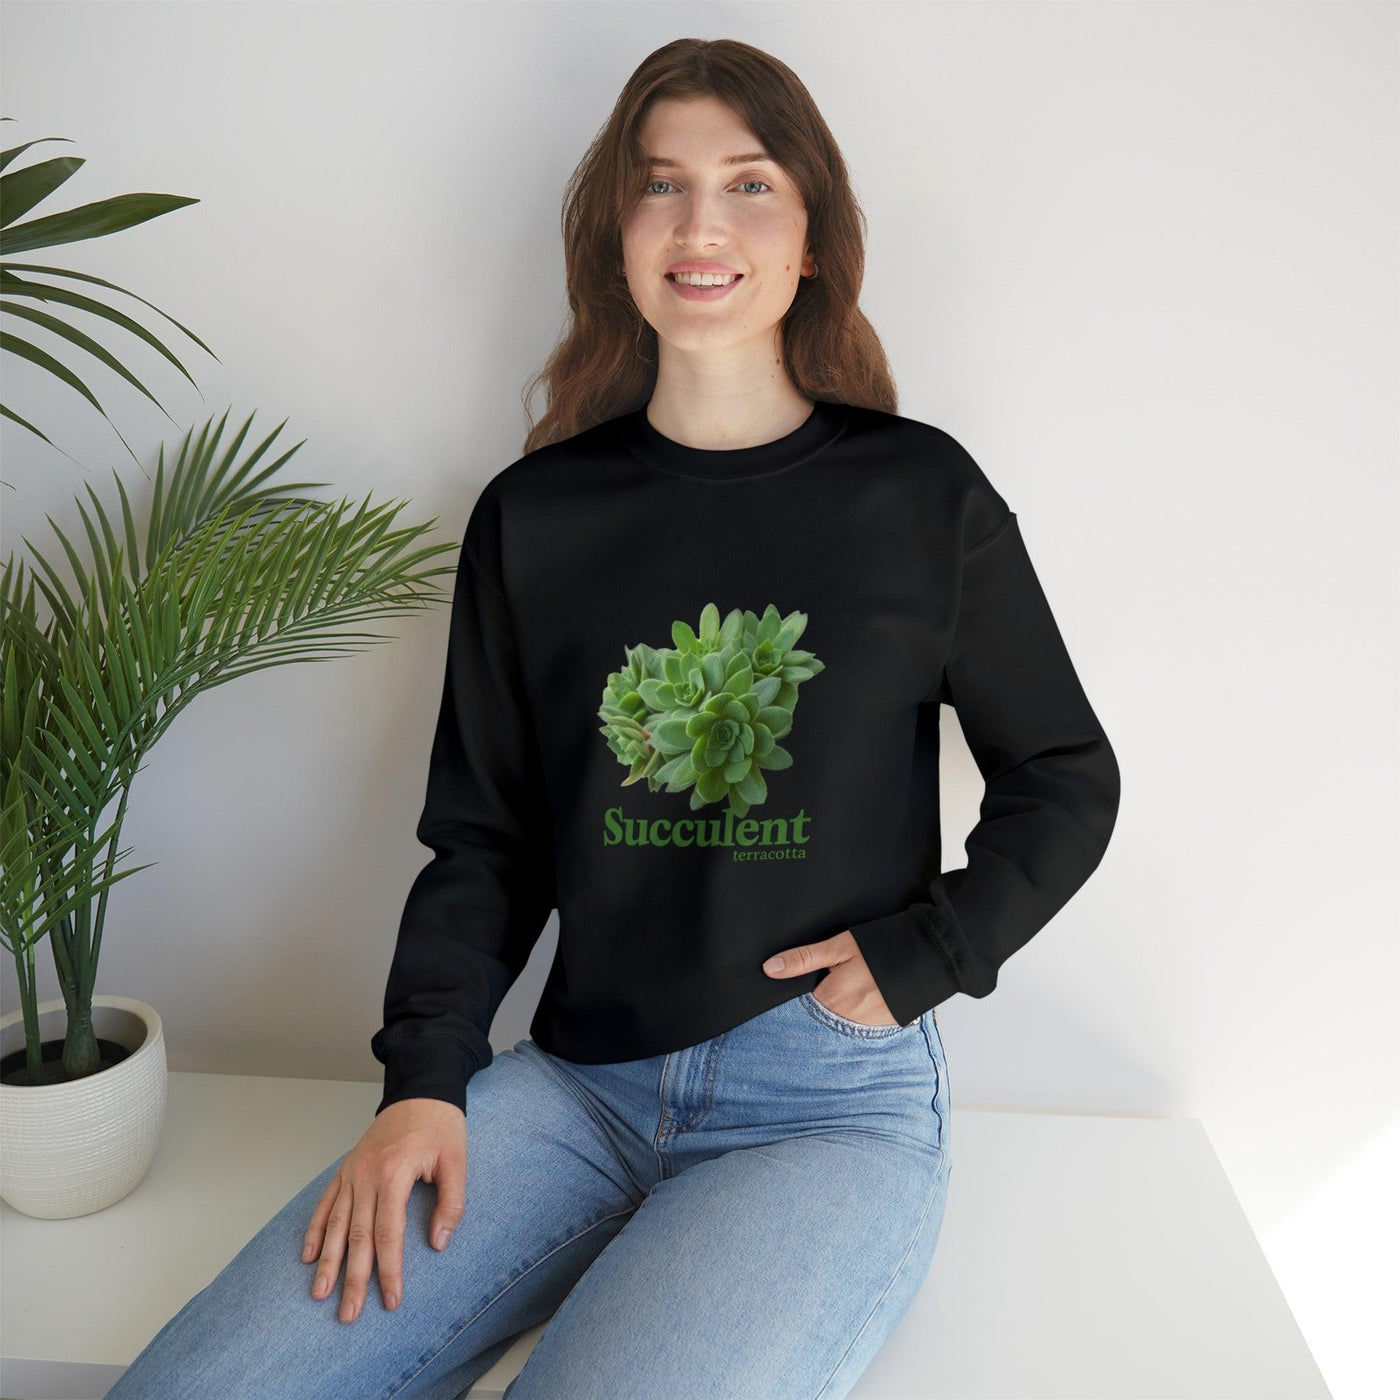 Succulent Sweatshirt